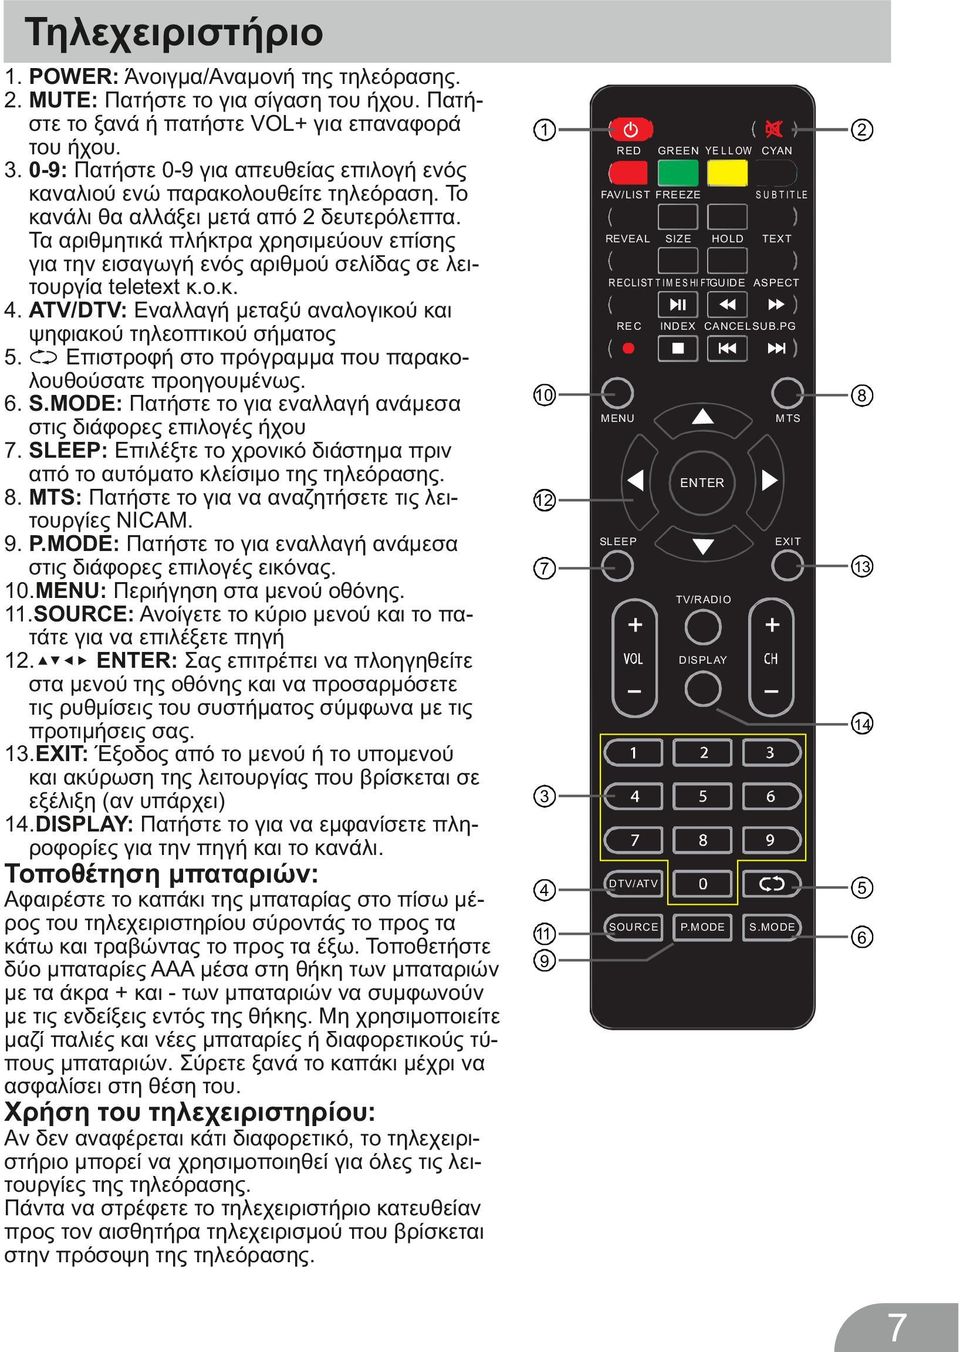 Τα αριθμητικά πλήκτρα χρησιμεύουν επίσης για την εισαγωγή ενός αριθμού σελίδας σε λειτουργία teletext κ.ο.κ. 4. ATV/DTV: Εναλλαγή μεταξύ αναλογικού και ψηφιακού τηλεοπτικού σήματος 5.